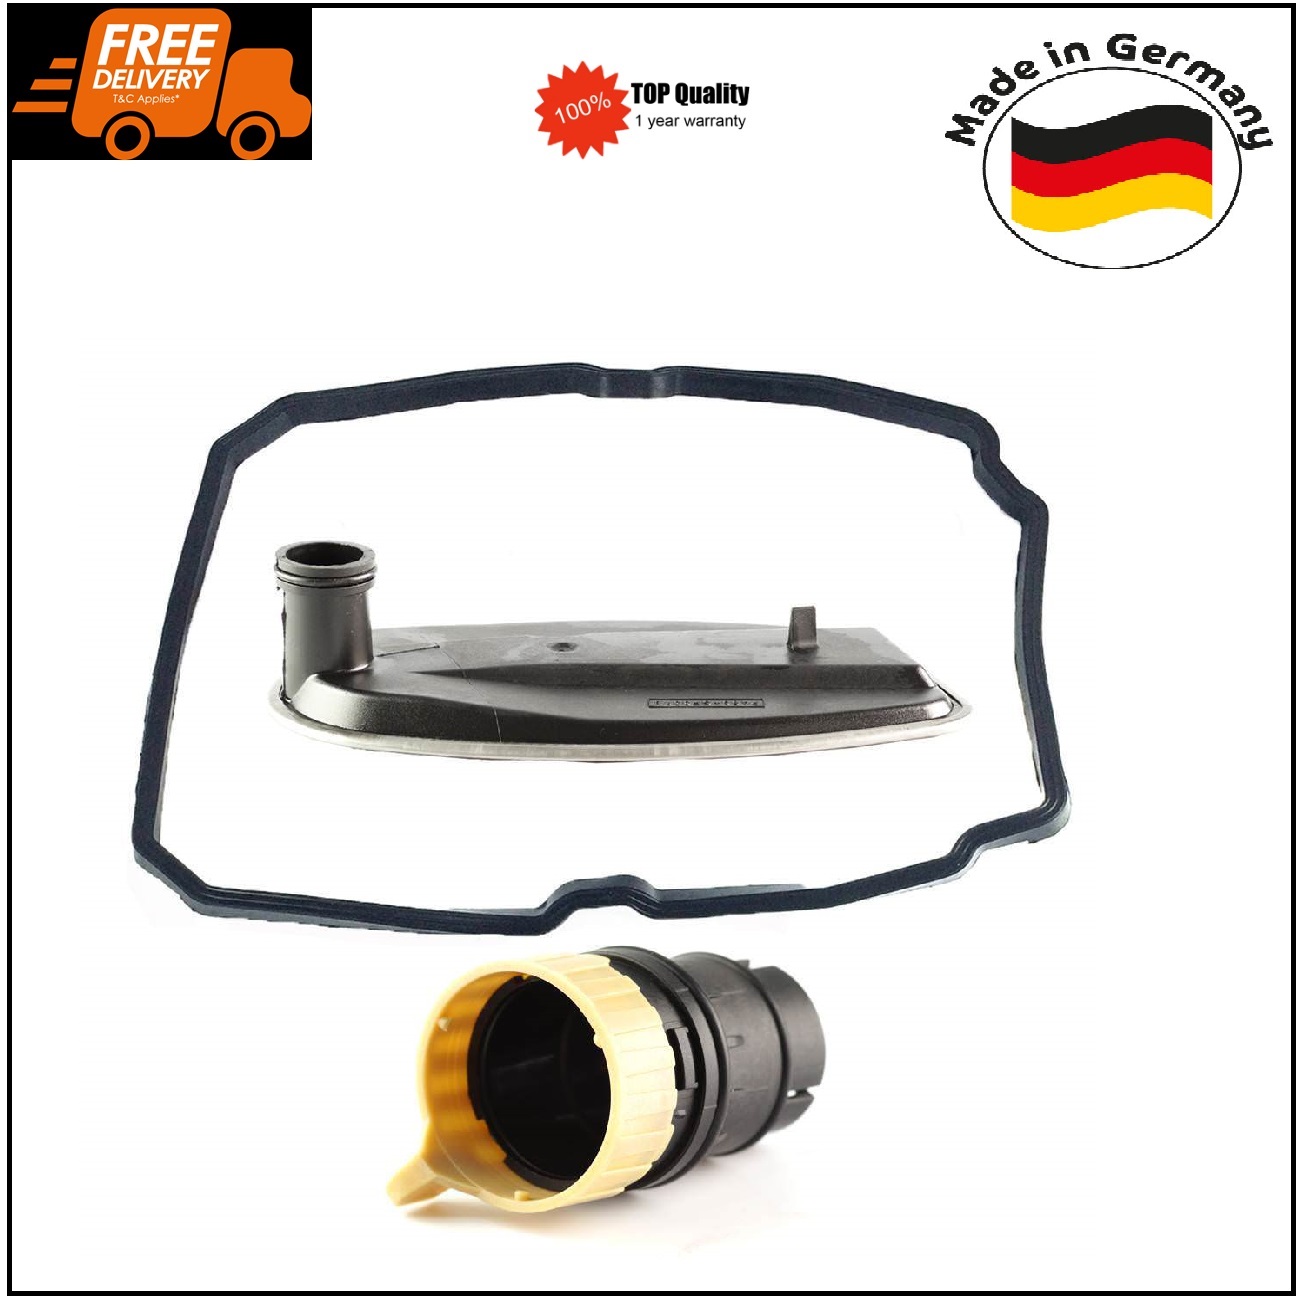 Transmission Filter & Plug Kit 722.6 for Mercedes W202 W203 W210 W211